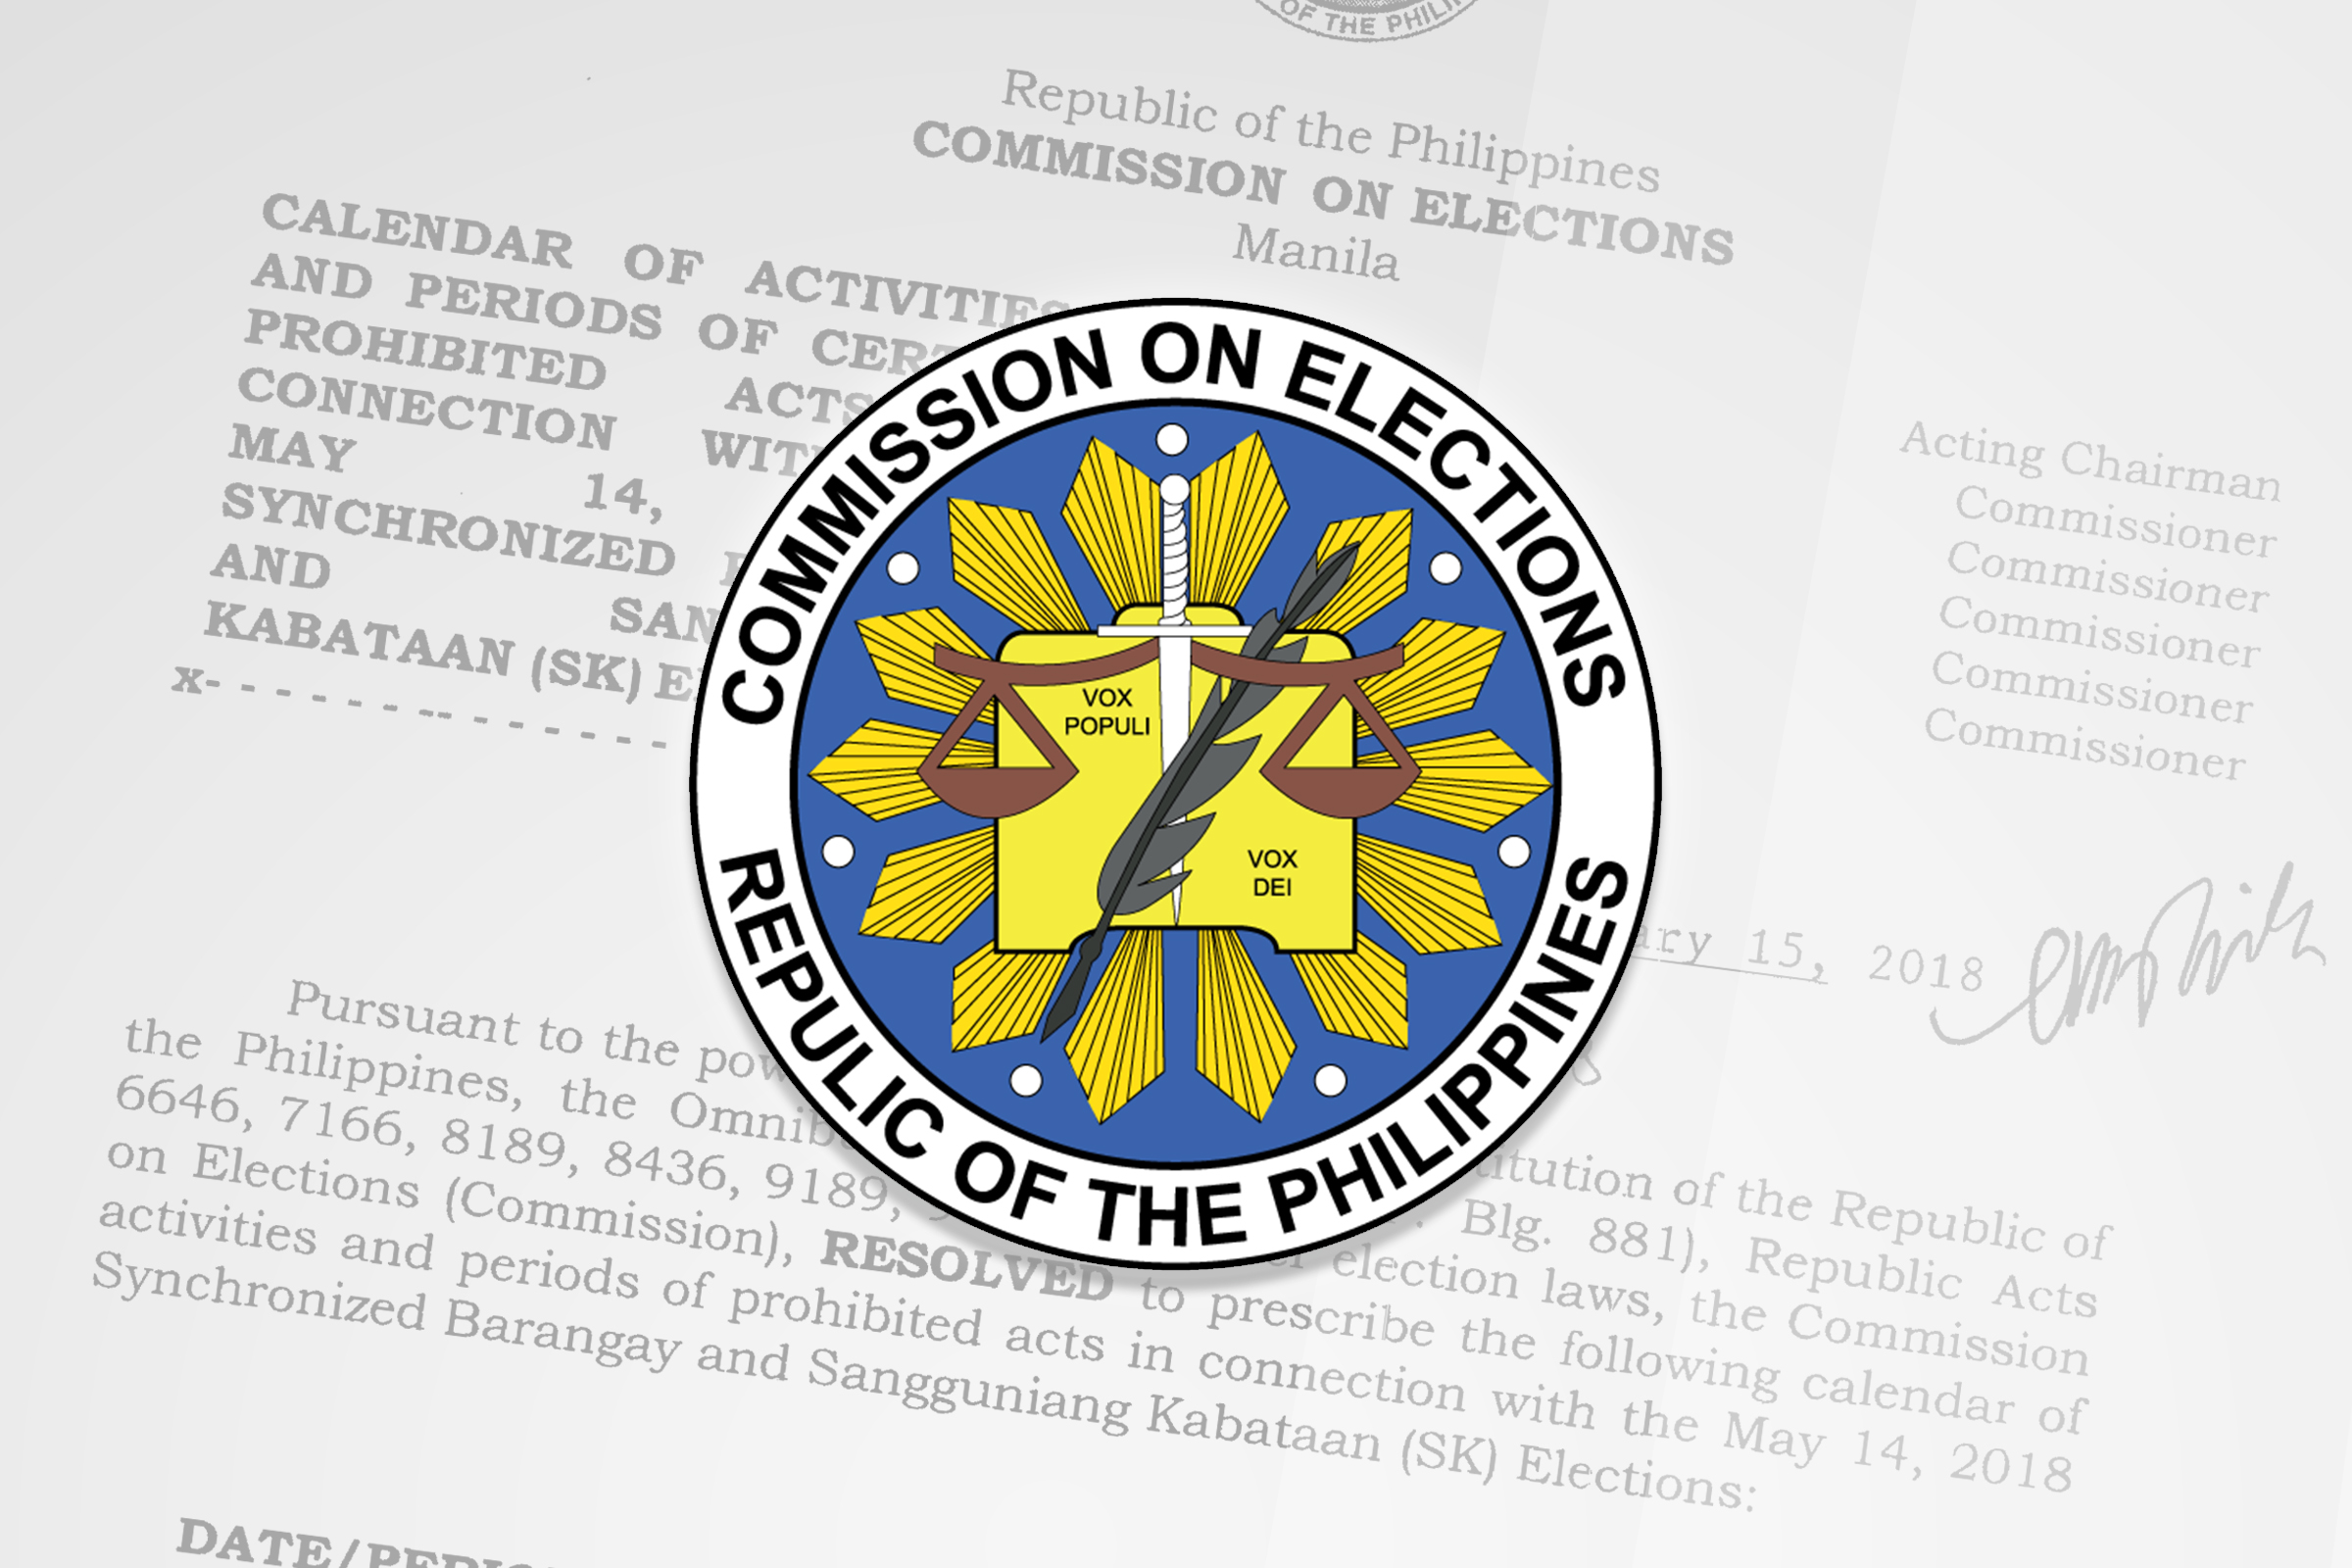 comelec-sets-calendar-of-activities-for-barangay-sk-polls-dilg